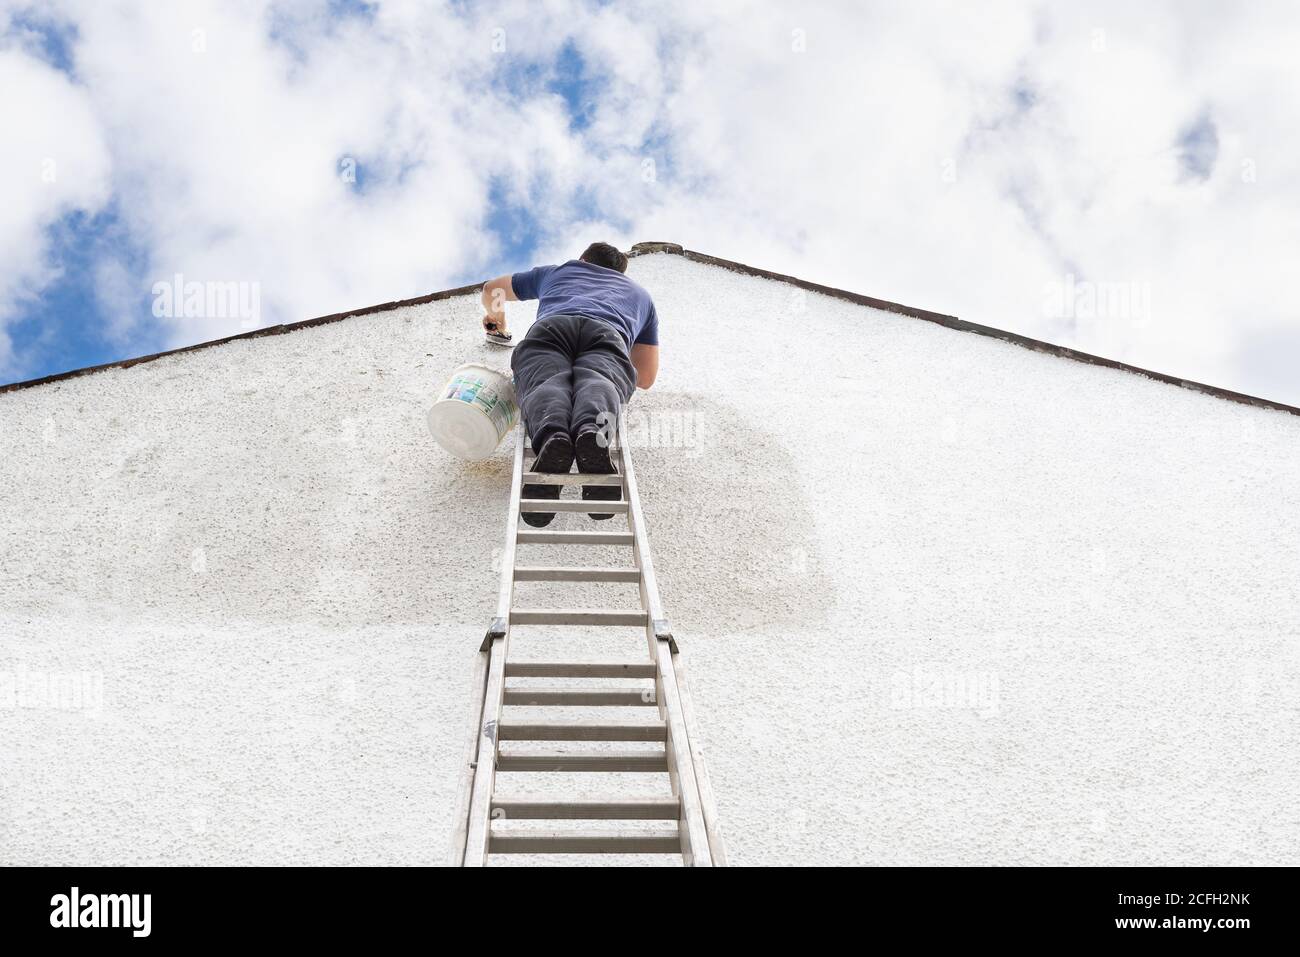 L'homme se tient en haut d'une échelle pour peindre le côté de la maison d'une couleur blanche fraîche. Banque D'Images